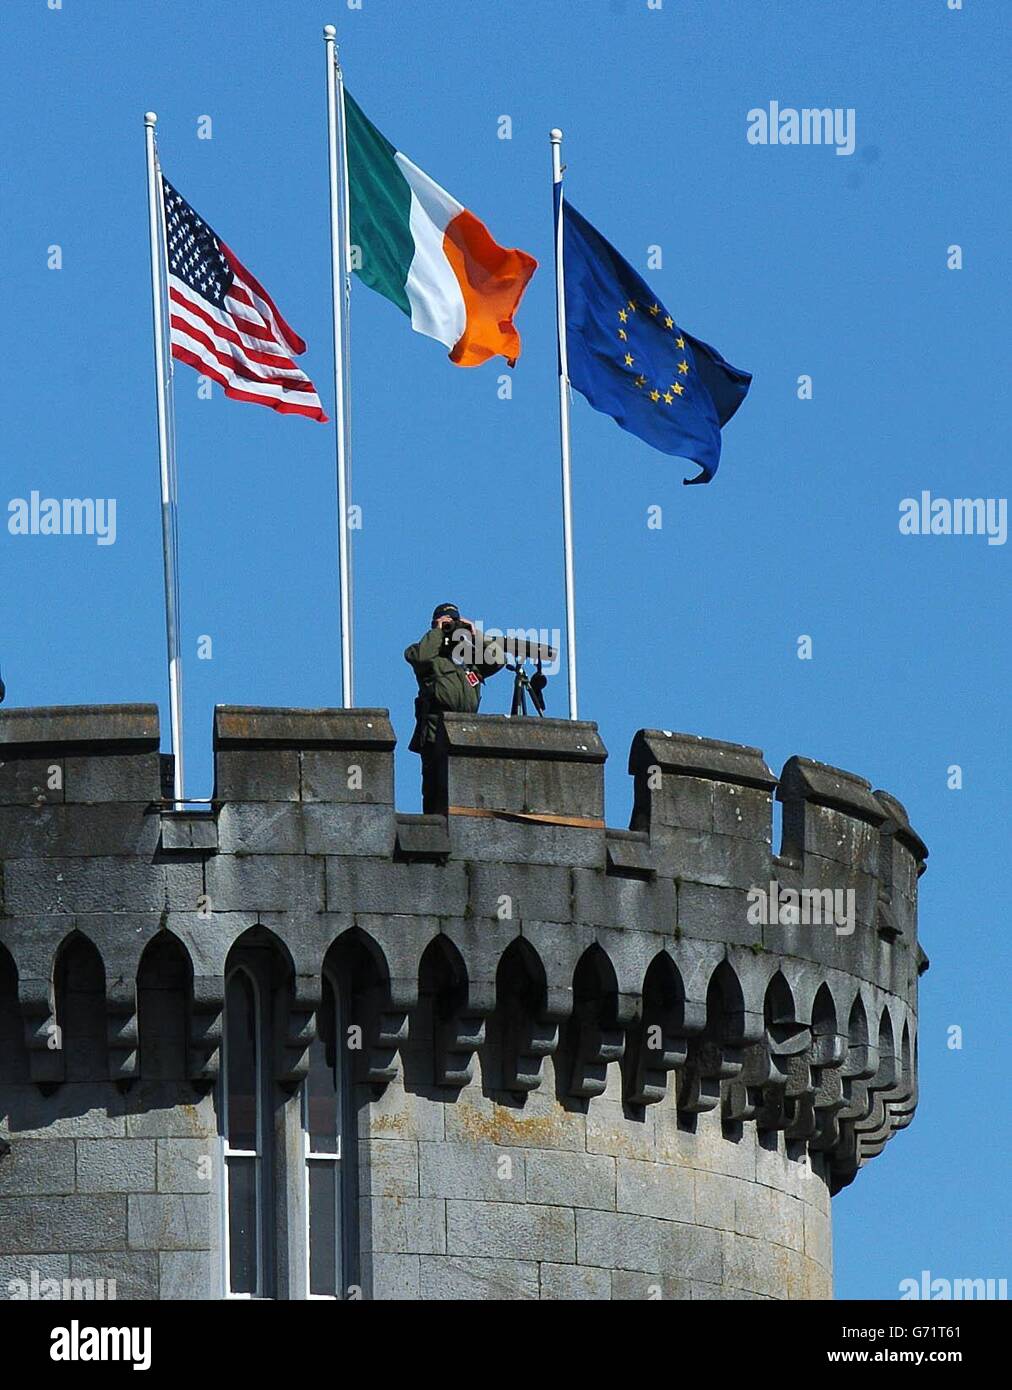 Le bandiere degli Stati Uniti, dell'Irlanda e dell'UE sorvolano il castello di Dromoland, nella contea di Clare, in Irlanda, mentre un ufficiale dell'esercito guarda la campagna circostante. Il presidente DEGLI STATI UNITI George Bush sta partecipando a un importante vertice UE-USA a Dromoland Castle, nel quadro della più grande operazione di sicurezza mai realizzata nello stato irlandese. Foto Stock